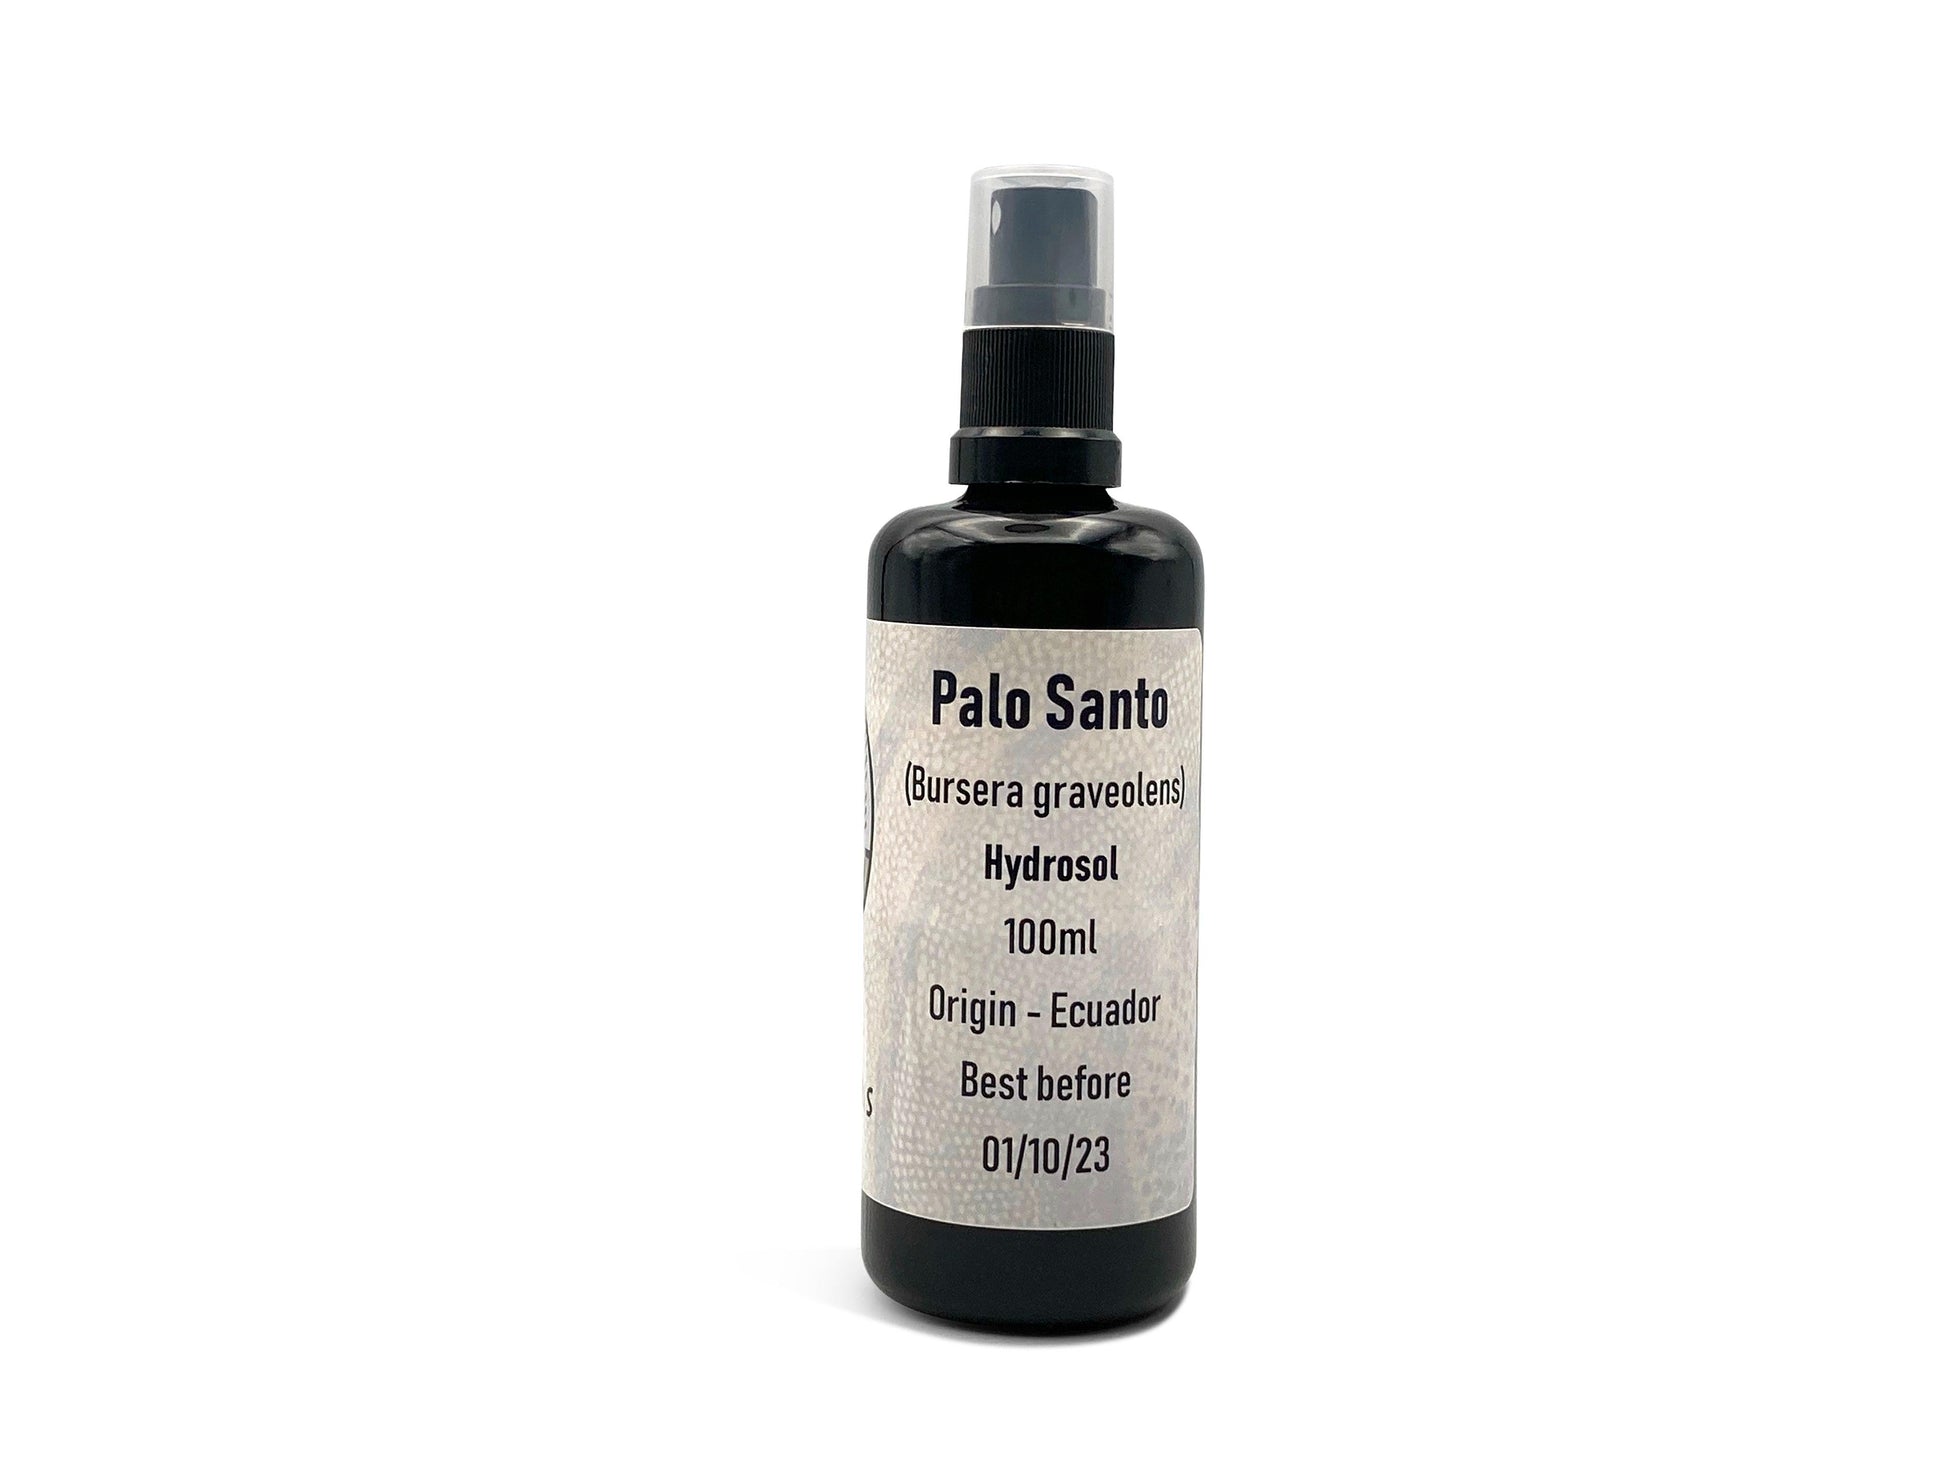 Palo santo hydrosol in a miron bottle